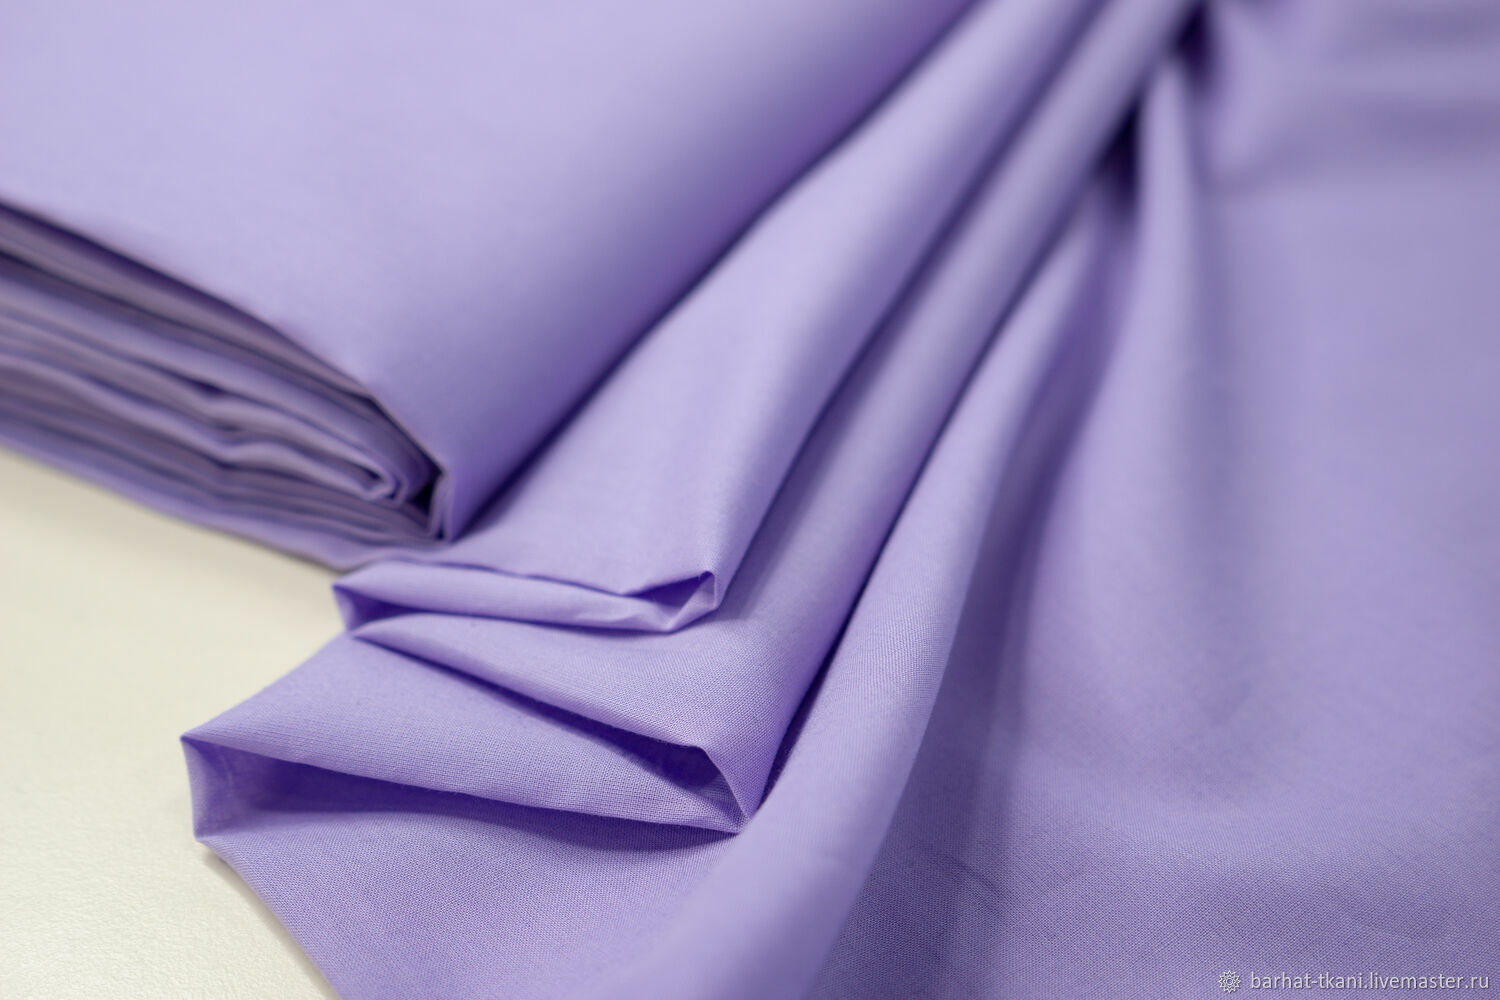 Fabric 1 19. Ткань хлопок фиолетовый. Сиреневый хлопок. Хлопчатобумажные ткани фиолетовые. Фиолетовая ткань.